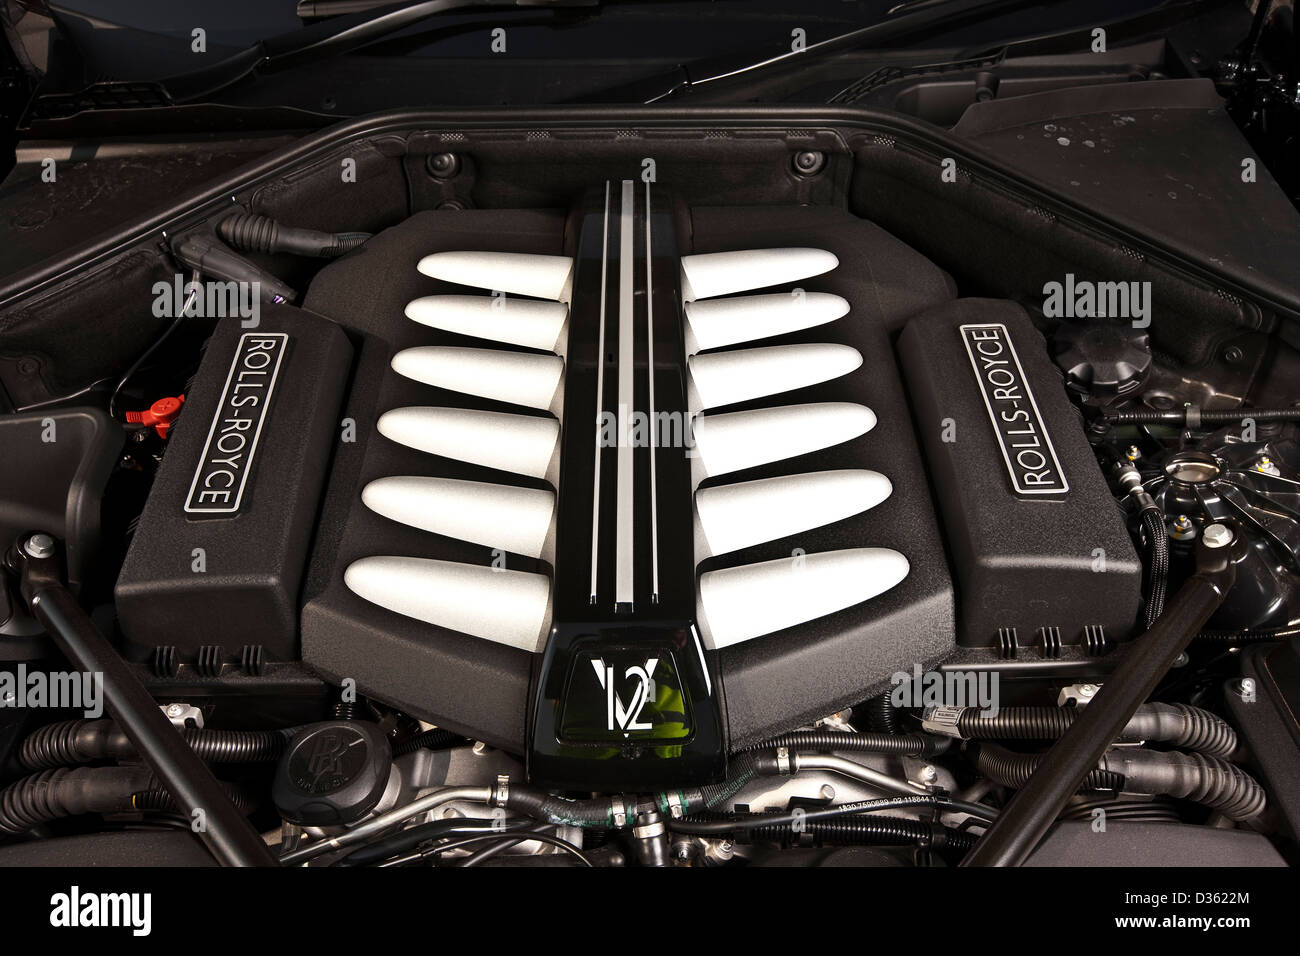 Rolls royce engine car immagini e fotografie stock ad alta risoluzione -  Alamy